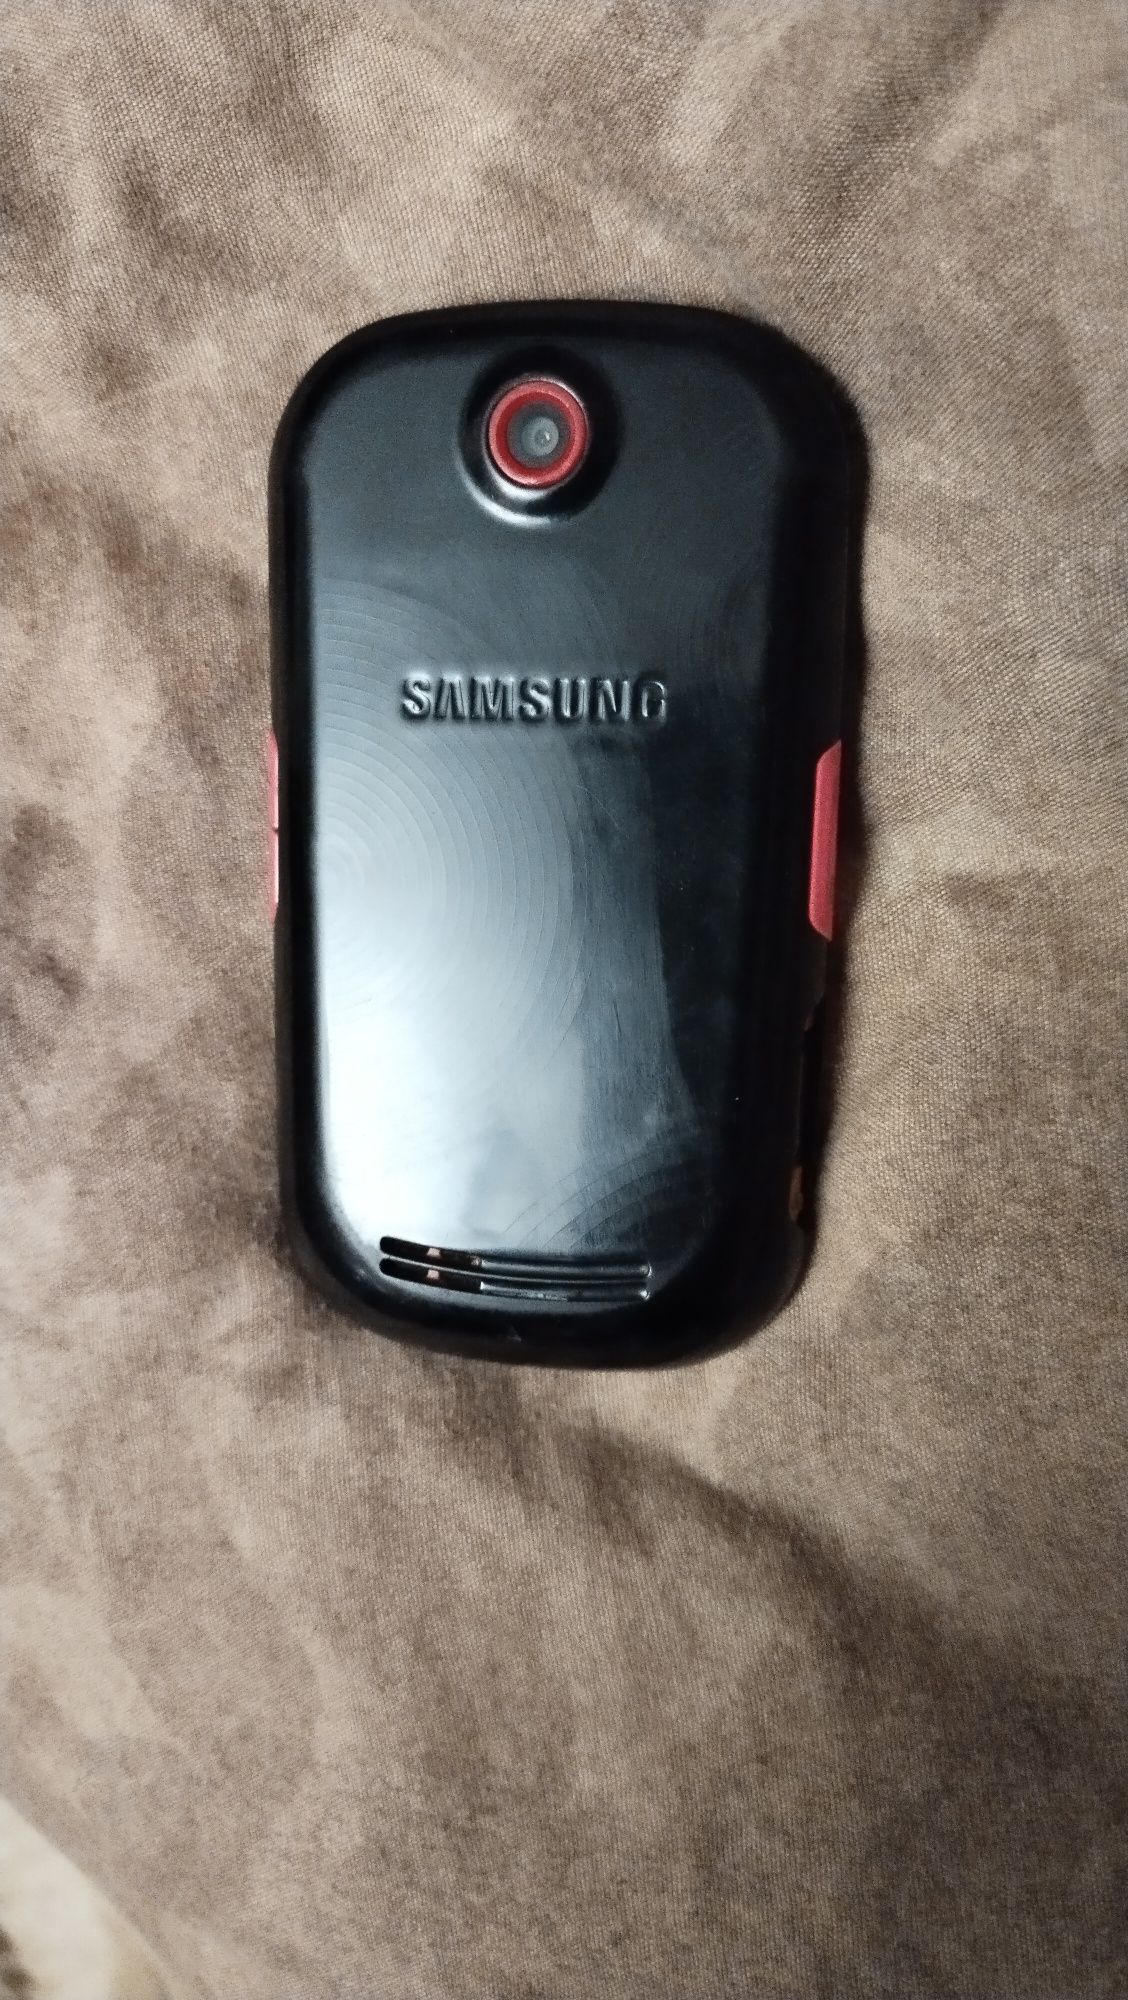 Мобилка Samsung CT-S3650 в отличном состоянии.